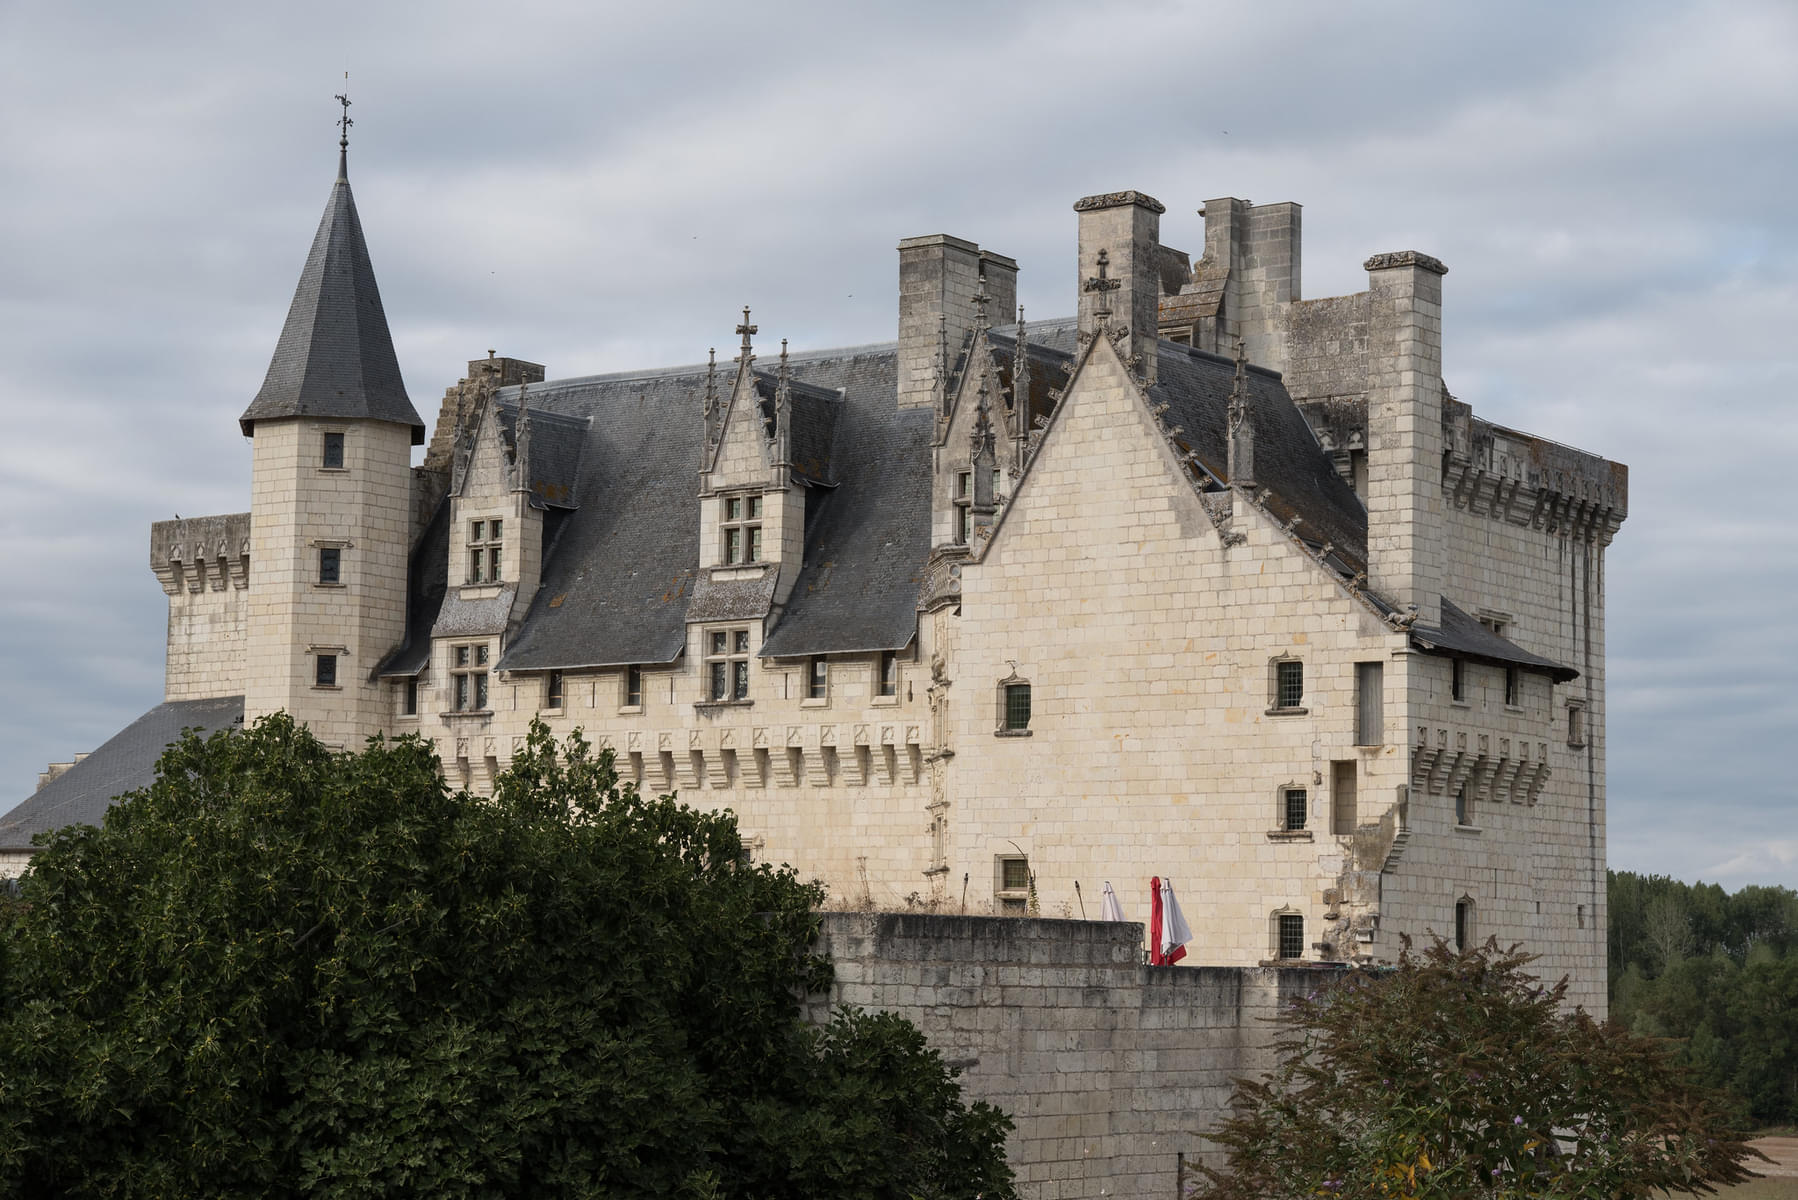 Some Interesting facts about Chateau de Montsoreau